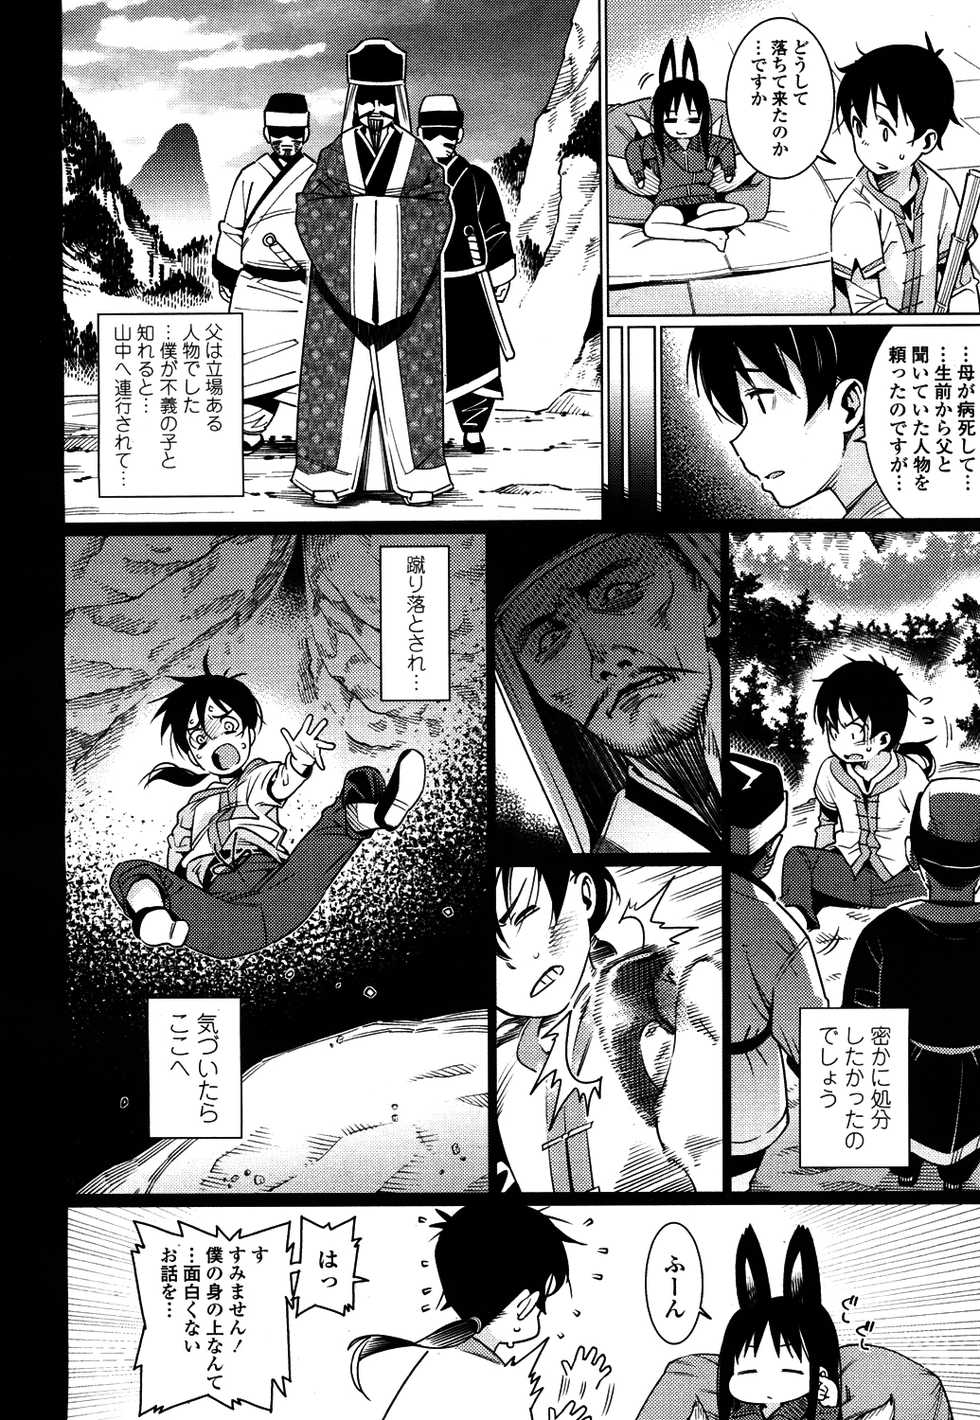 Towako 4 [Digital] - Page 5